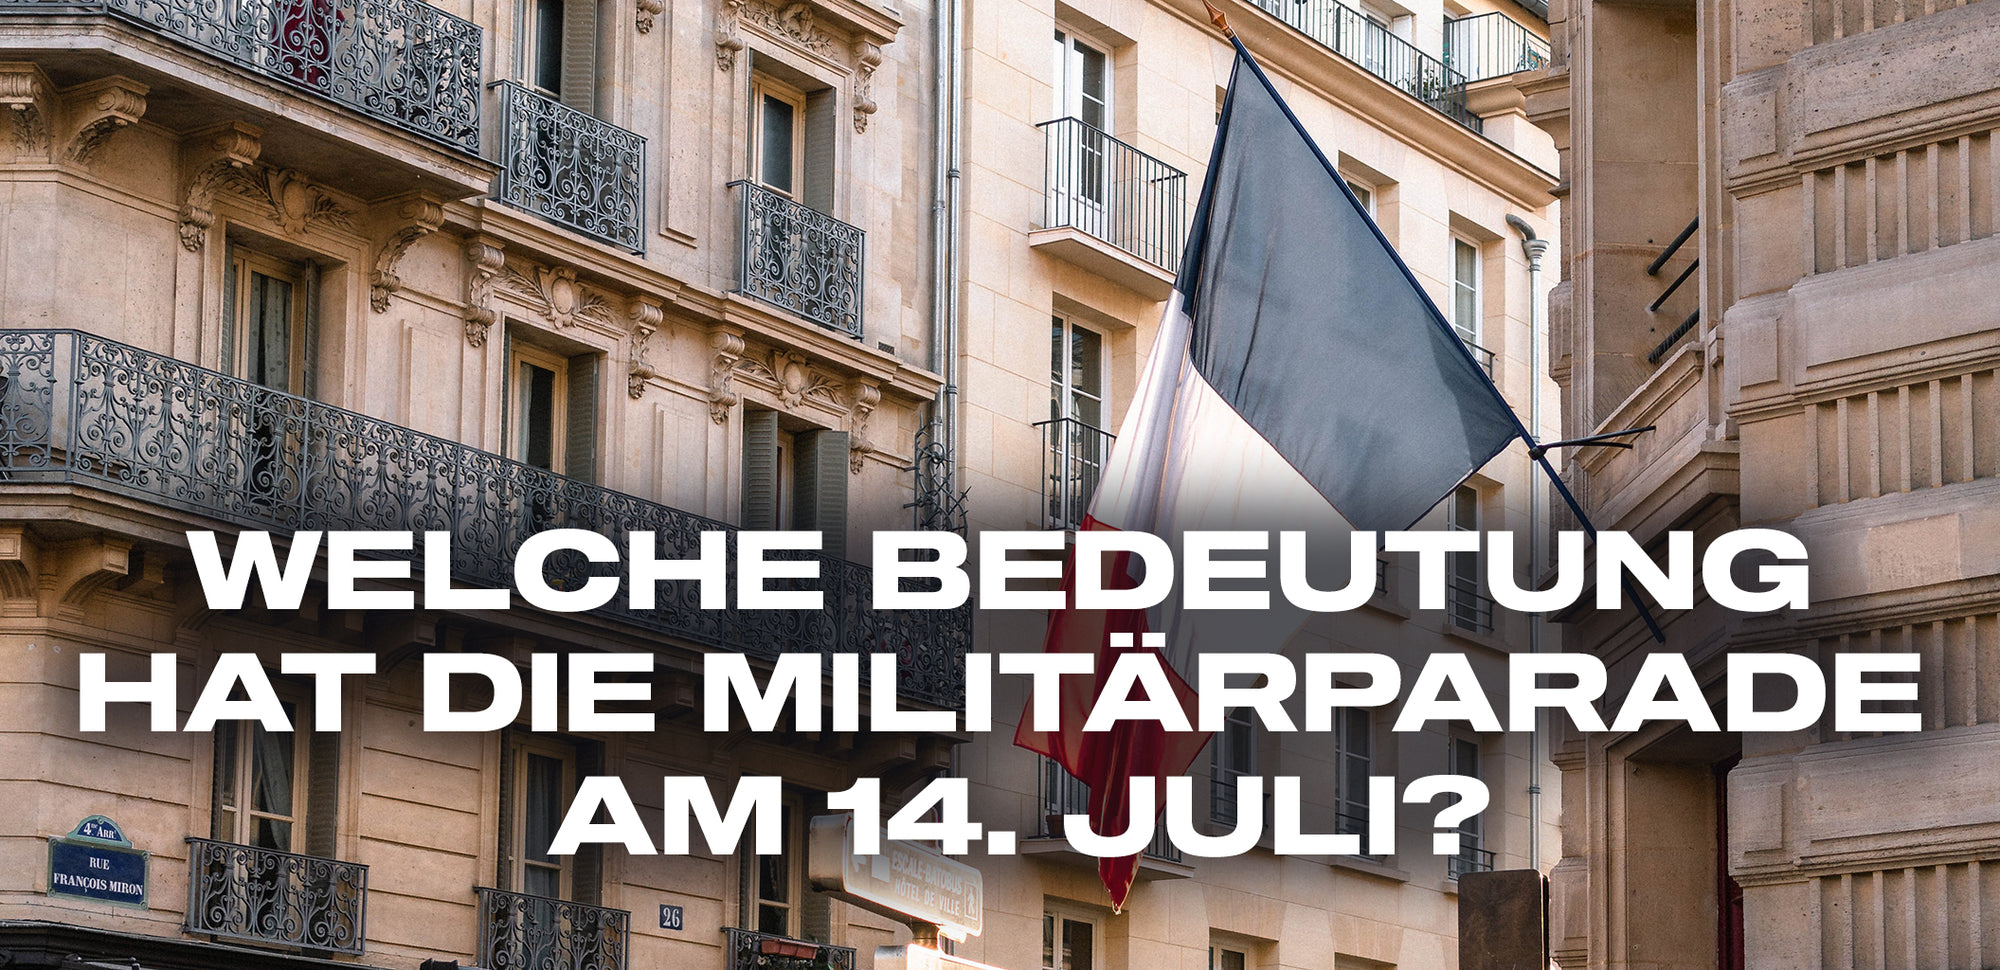 welche bedeutung hat die militarparade am 14. Juli